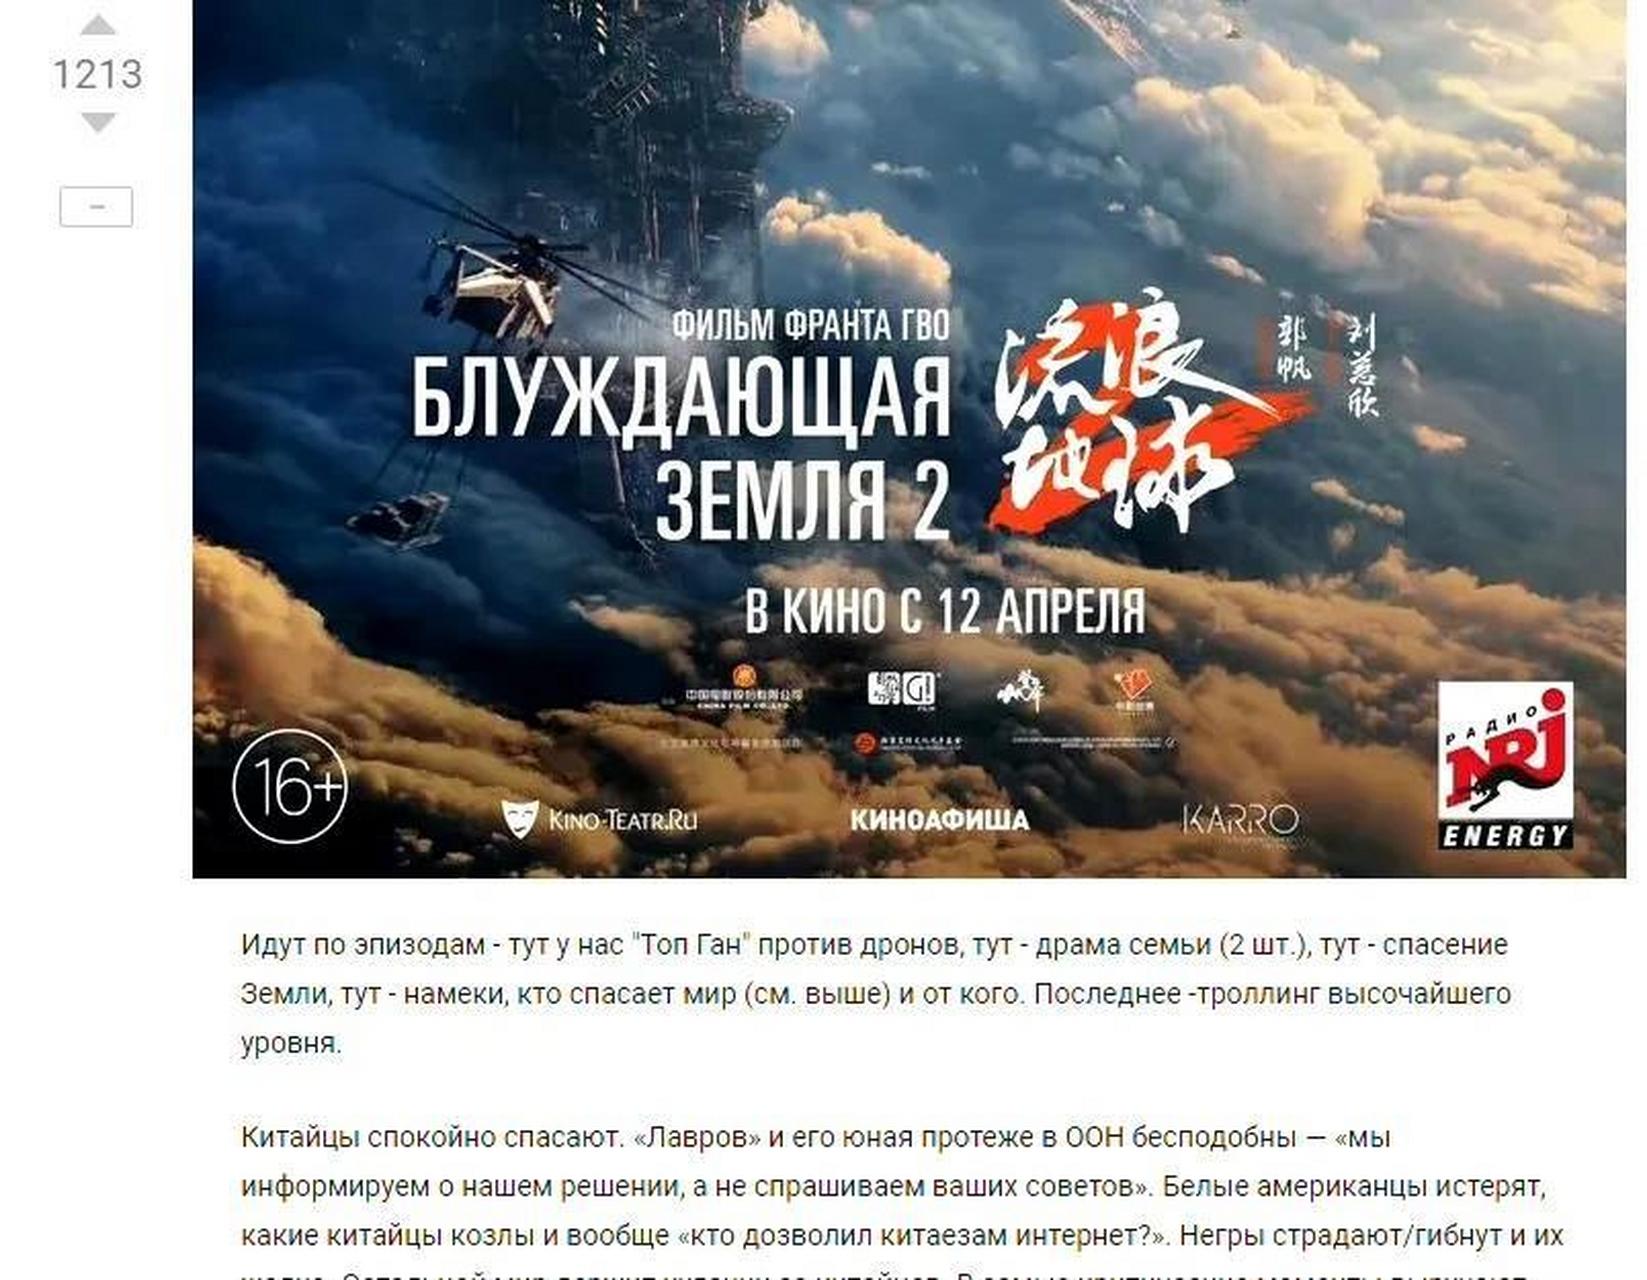 近期《流浪地球2》在俄罗斯首映后,俄罗斯人的影评陆续出炉了!